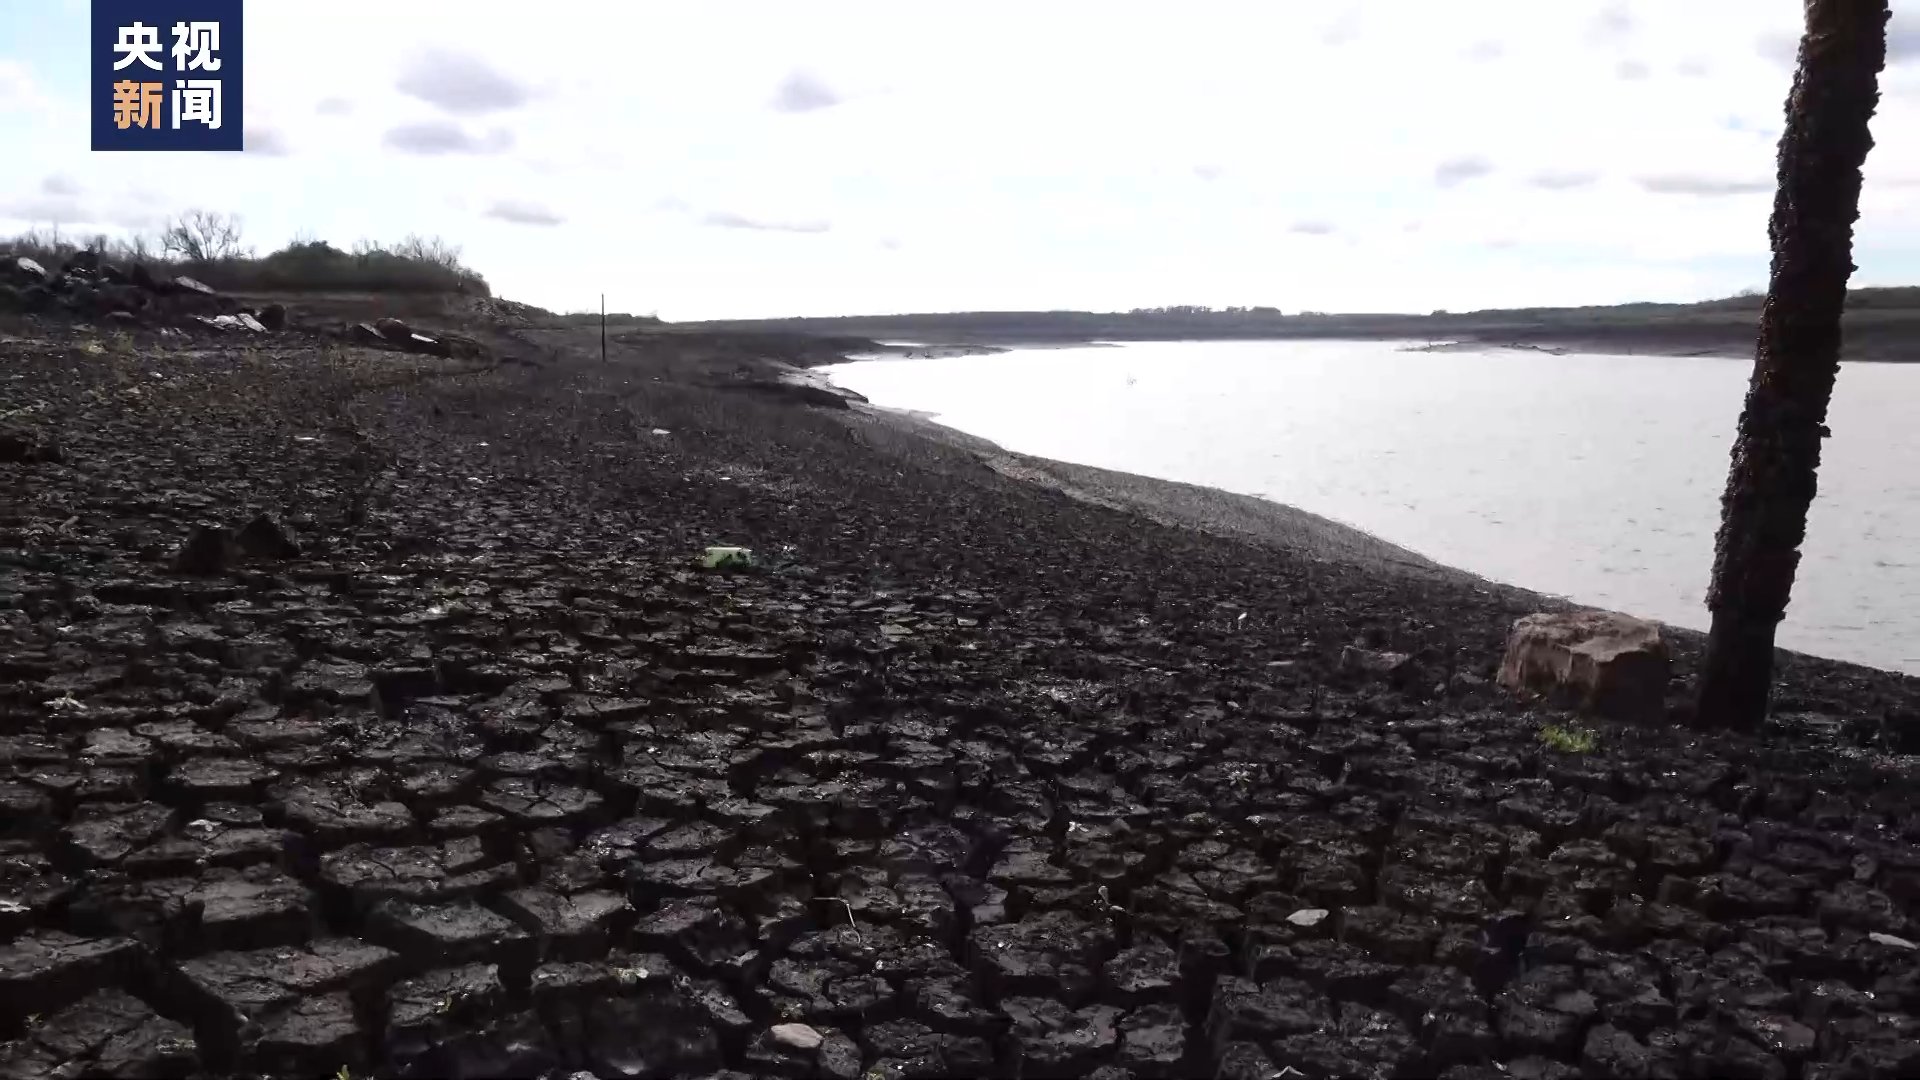 乌拉圭遭遇70年最严重干旱 首都水库淡水消耗殆尽